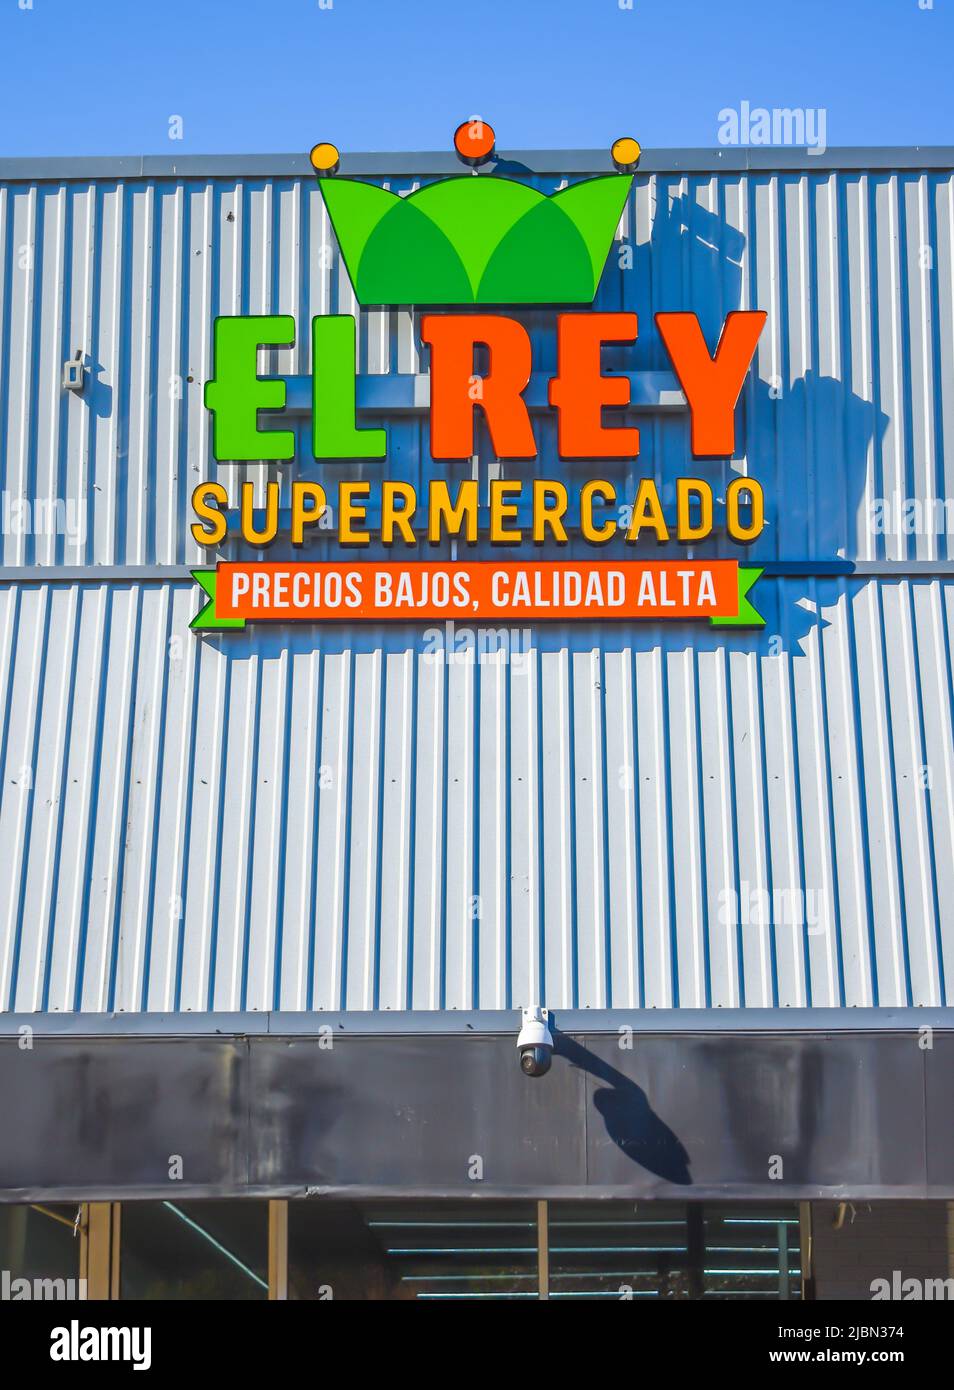 El Rey Supermarkt Außenfassade Marke und Logo Signage in grün und orange auf einem weißen, gerippten Metalldach mit einem klaren blauen leuchtenden Himmel. Stockfoto